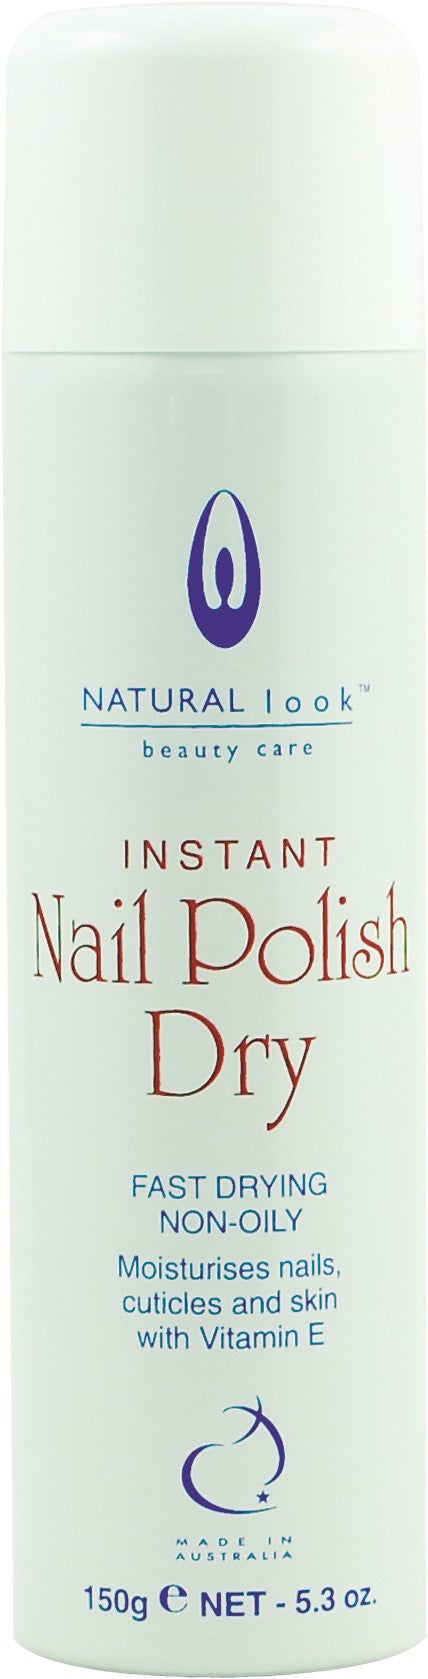 Natural Look Instant Nail Polish Dry 150g